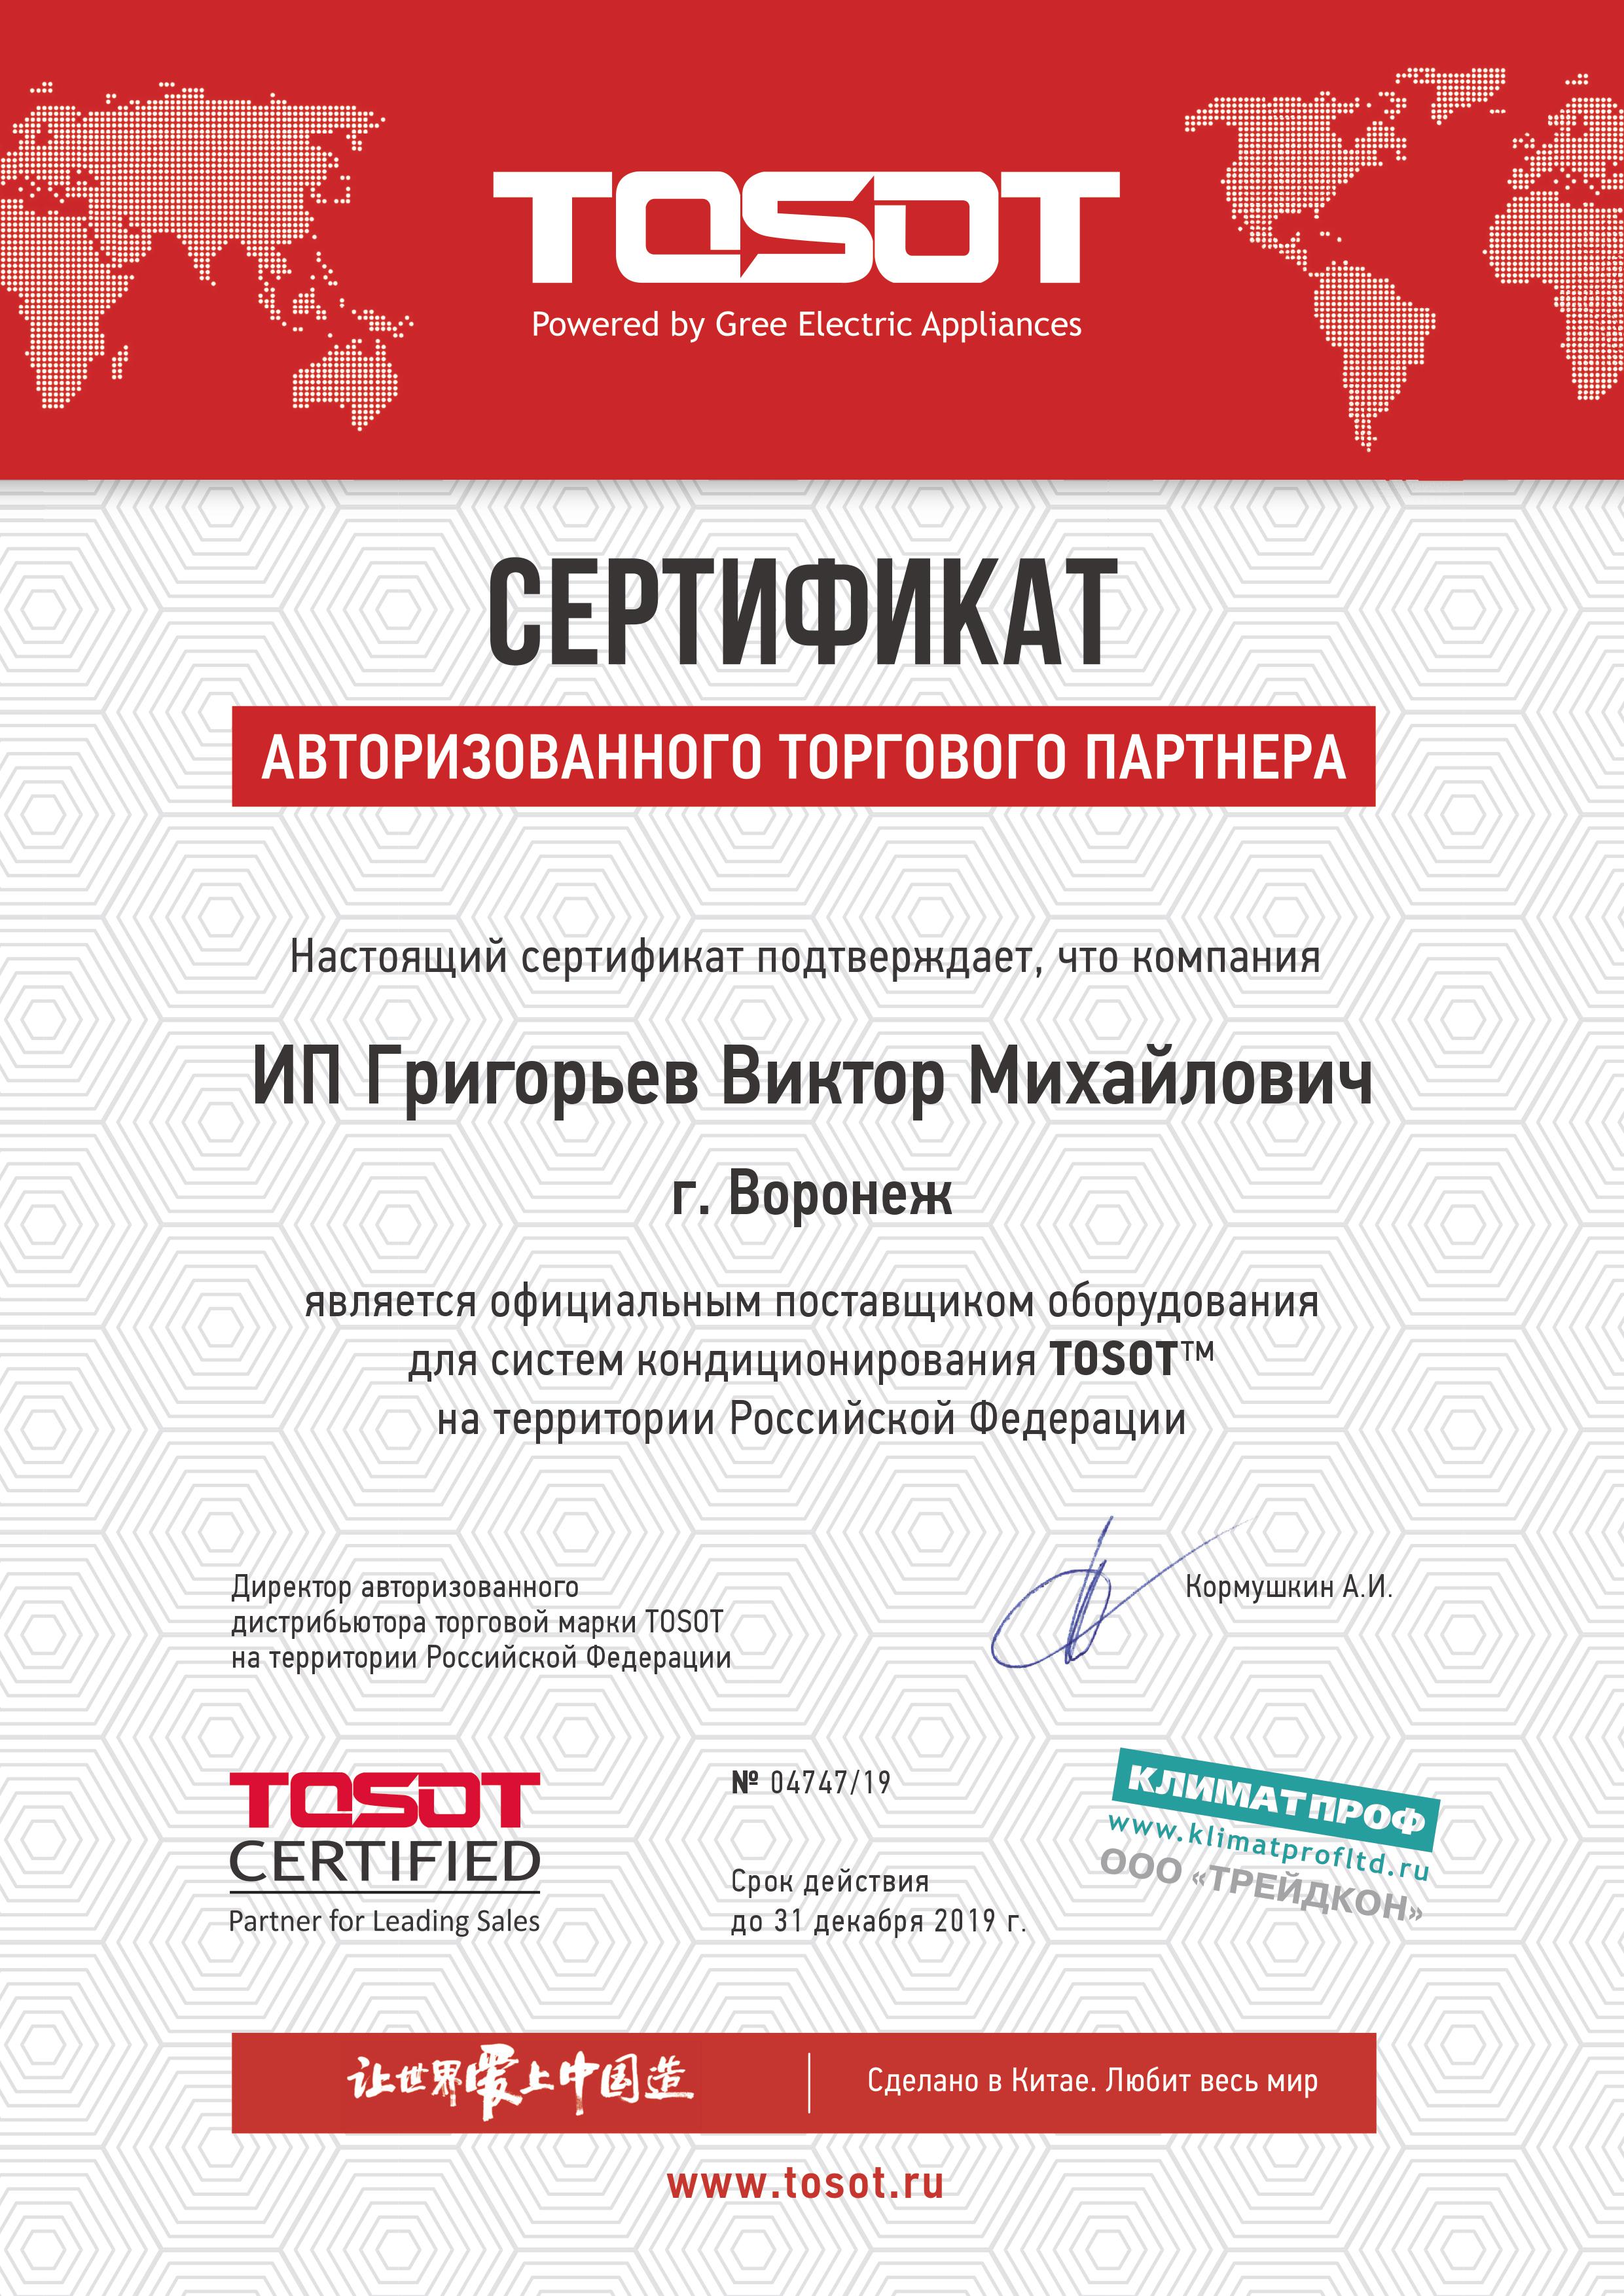 Нажмите на изображение, чтобы посмотреть сертификат  Tosot